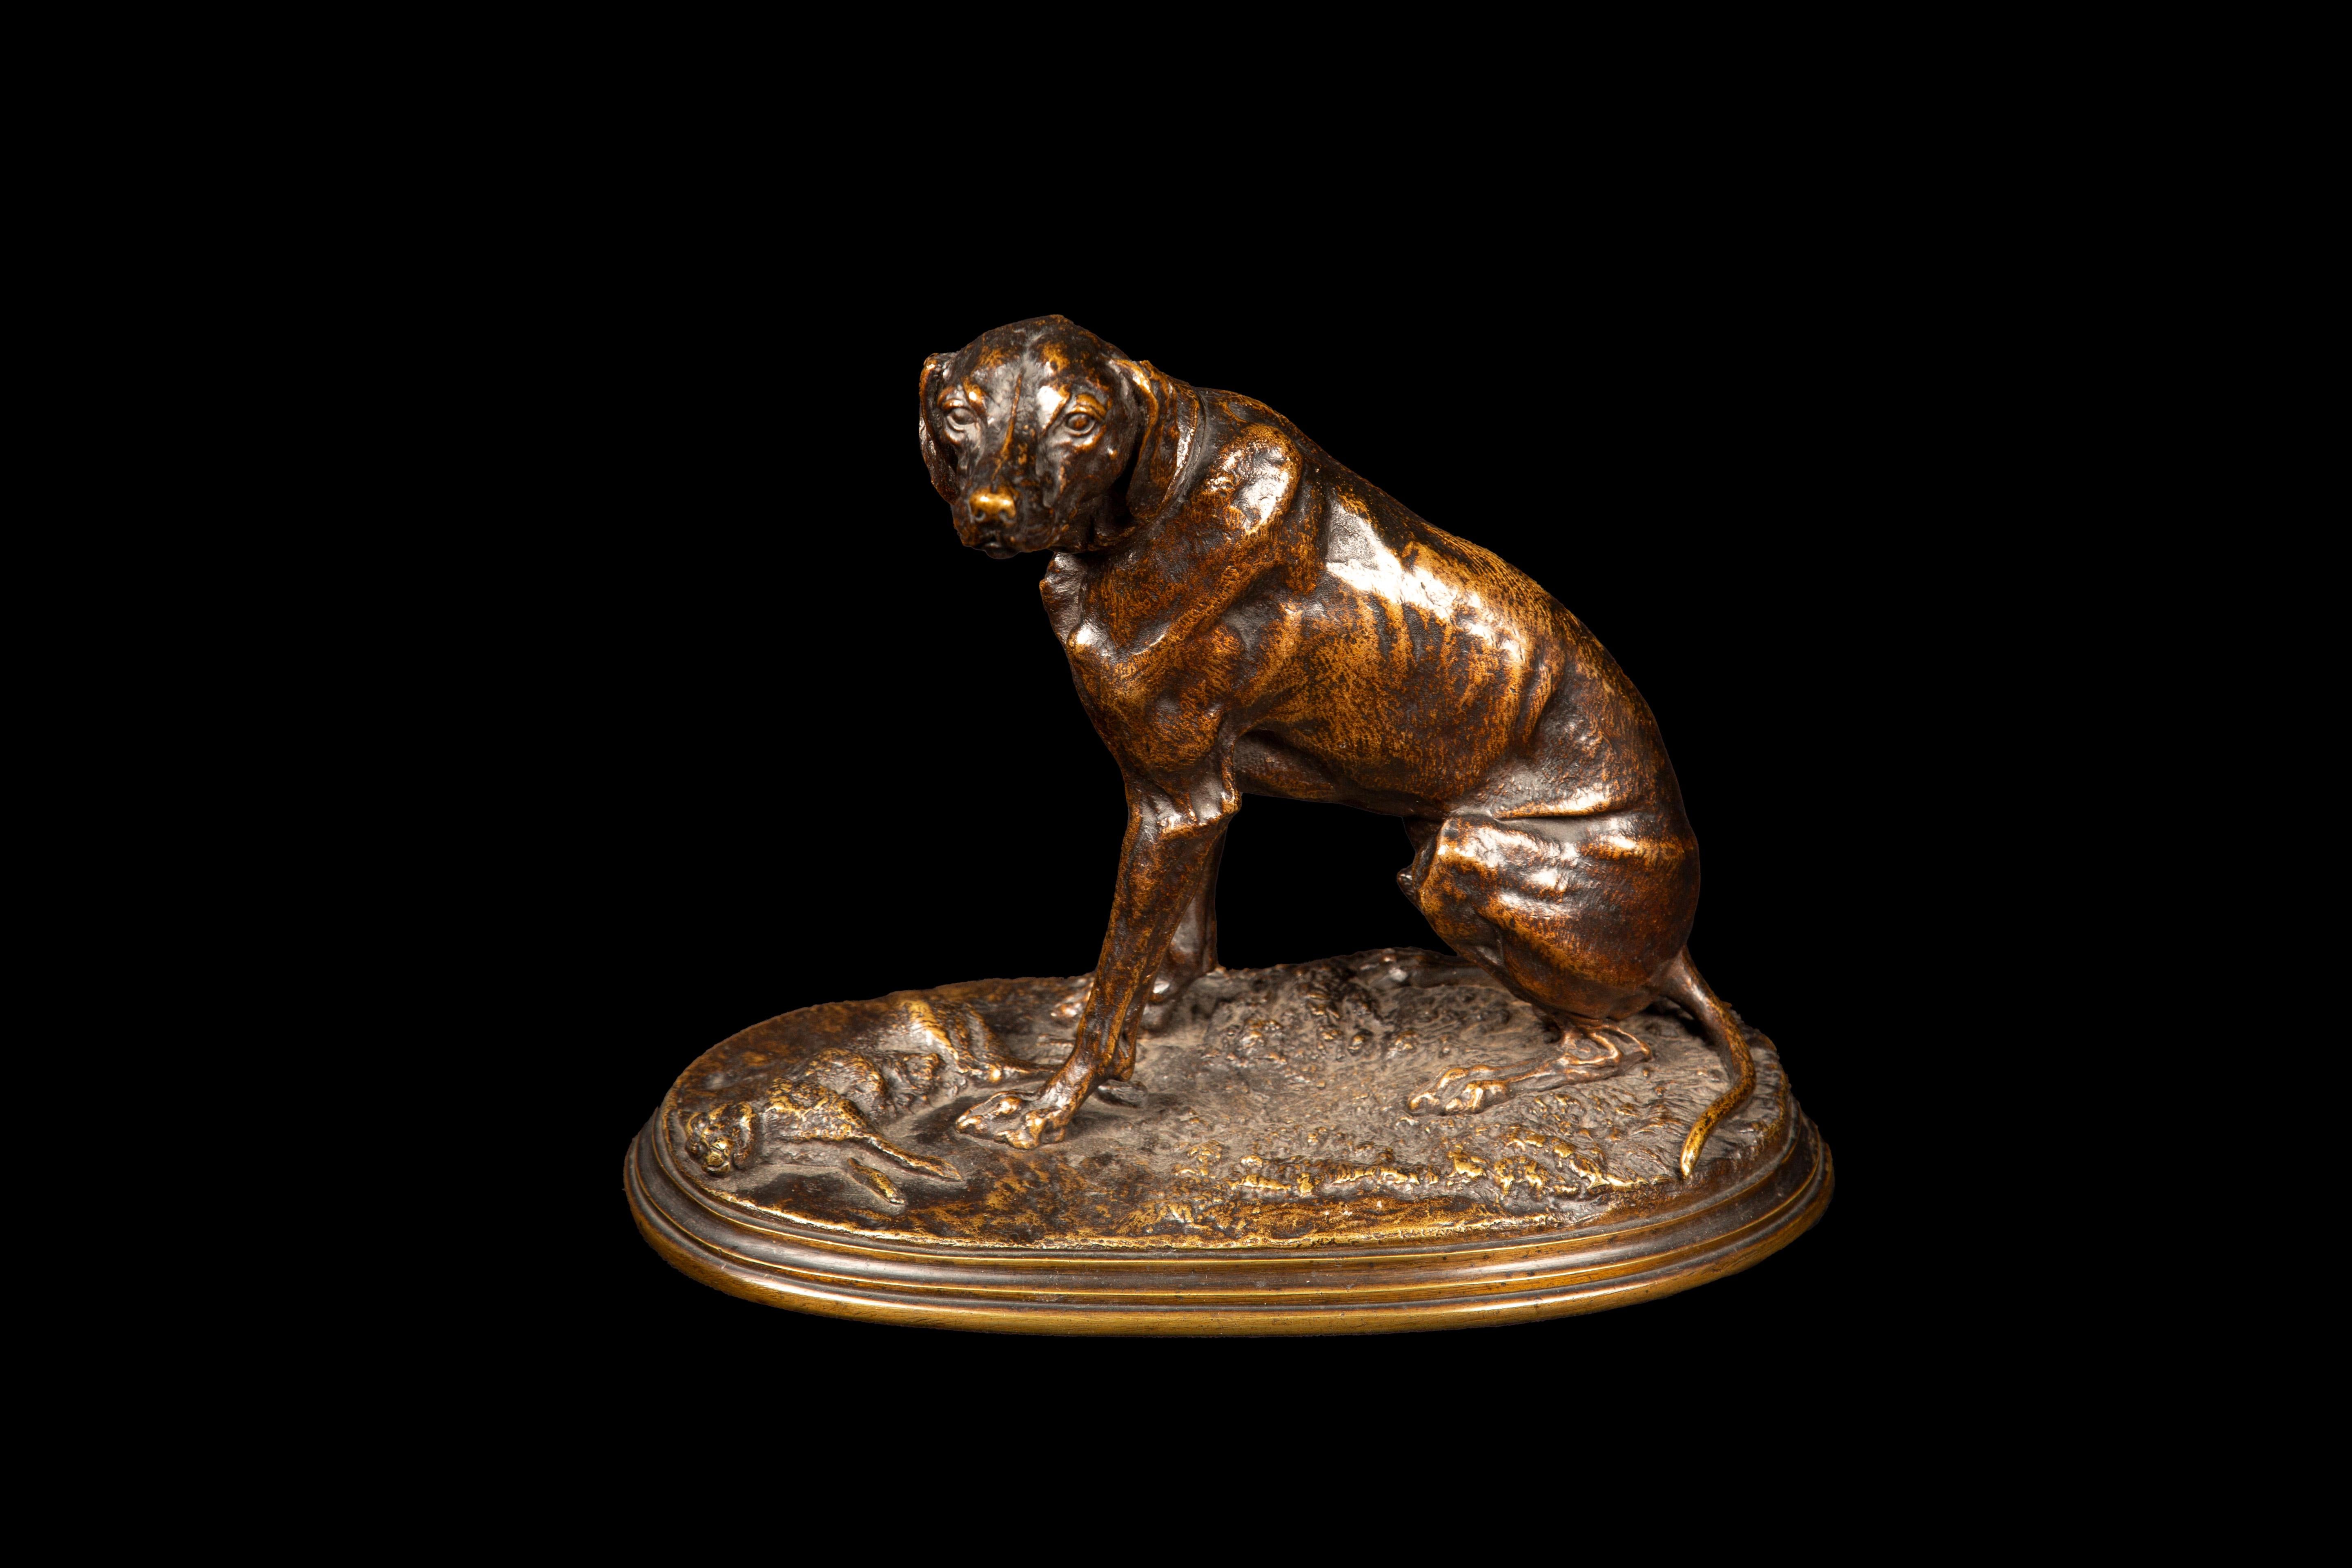 Diese aus patinierter Bronze gefertigte Skulptur ist eine bemerkenswerte Darstellung einer historischen Jagdszene. Es zeigt einen Jagdhund, der triumphierend neben seiner Beute steht und einen Moment der Intensität und des Erfolgs bei der Jagd